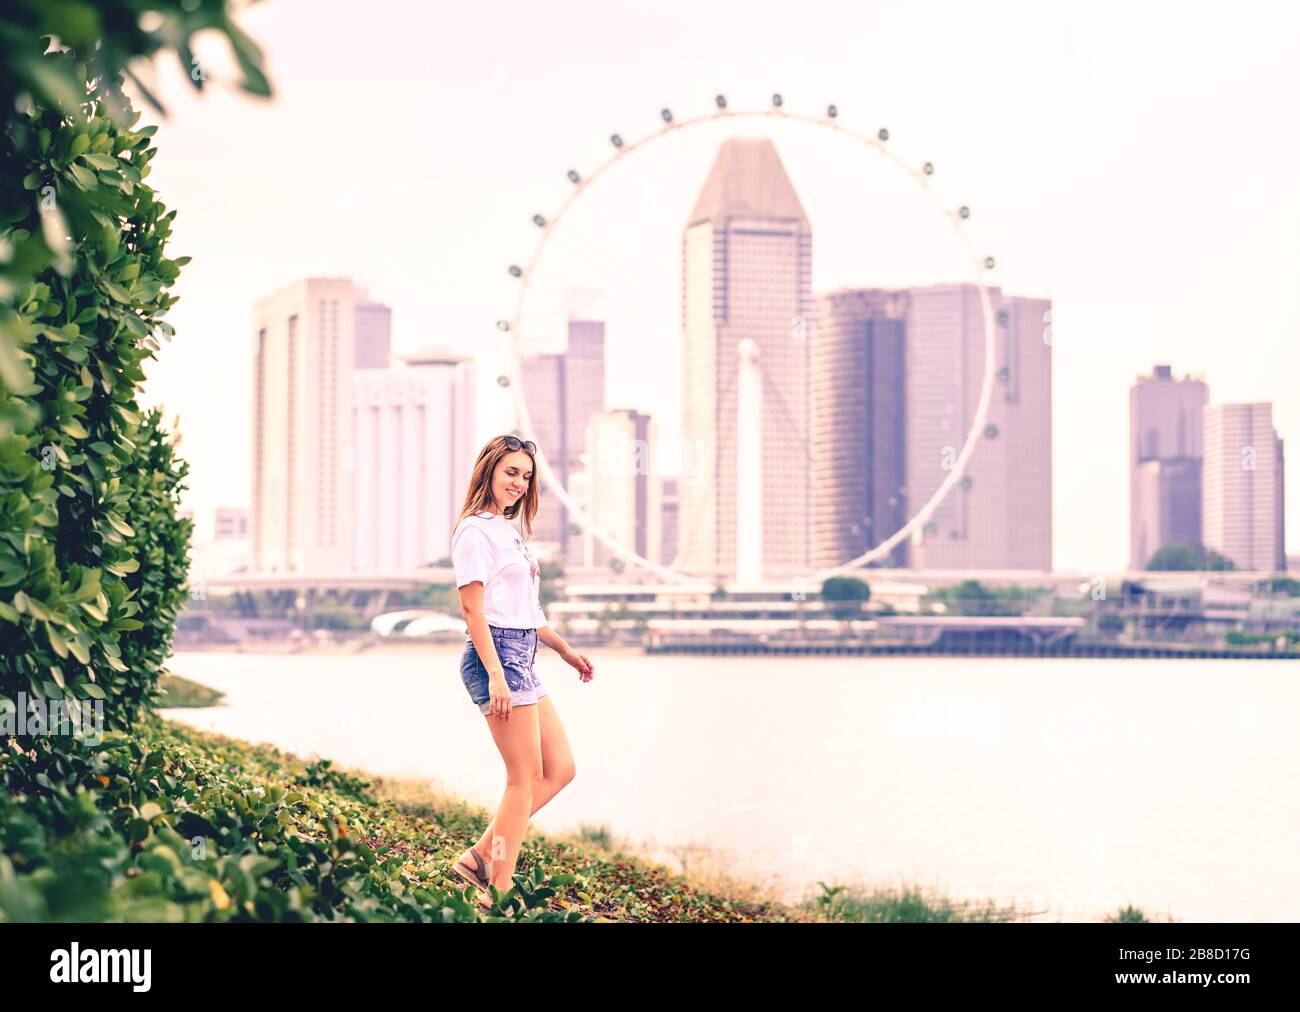 Donna di tendenza positiva in jeans shorts a piedi in un parco all'aperto con lo skyline urbano del centro città sullo sfondo. Stile di vita felice. Foto Stock